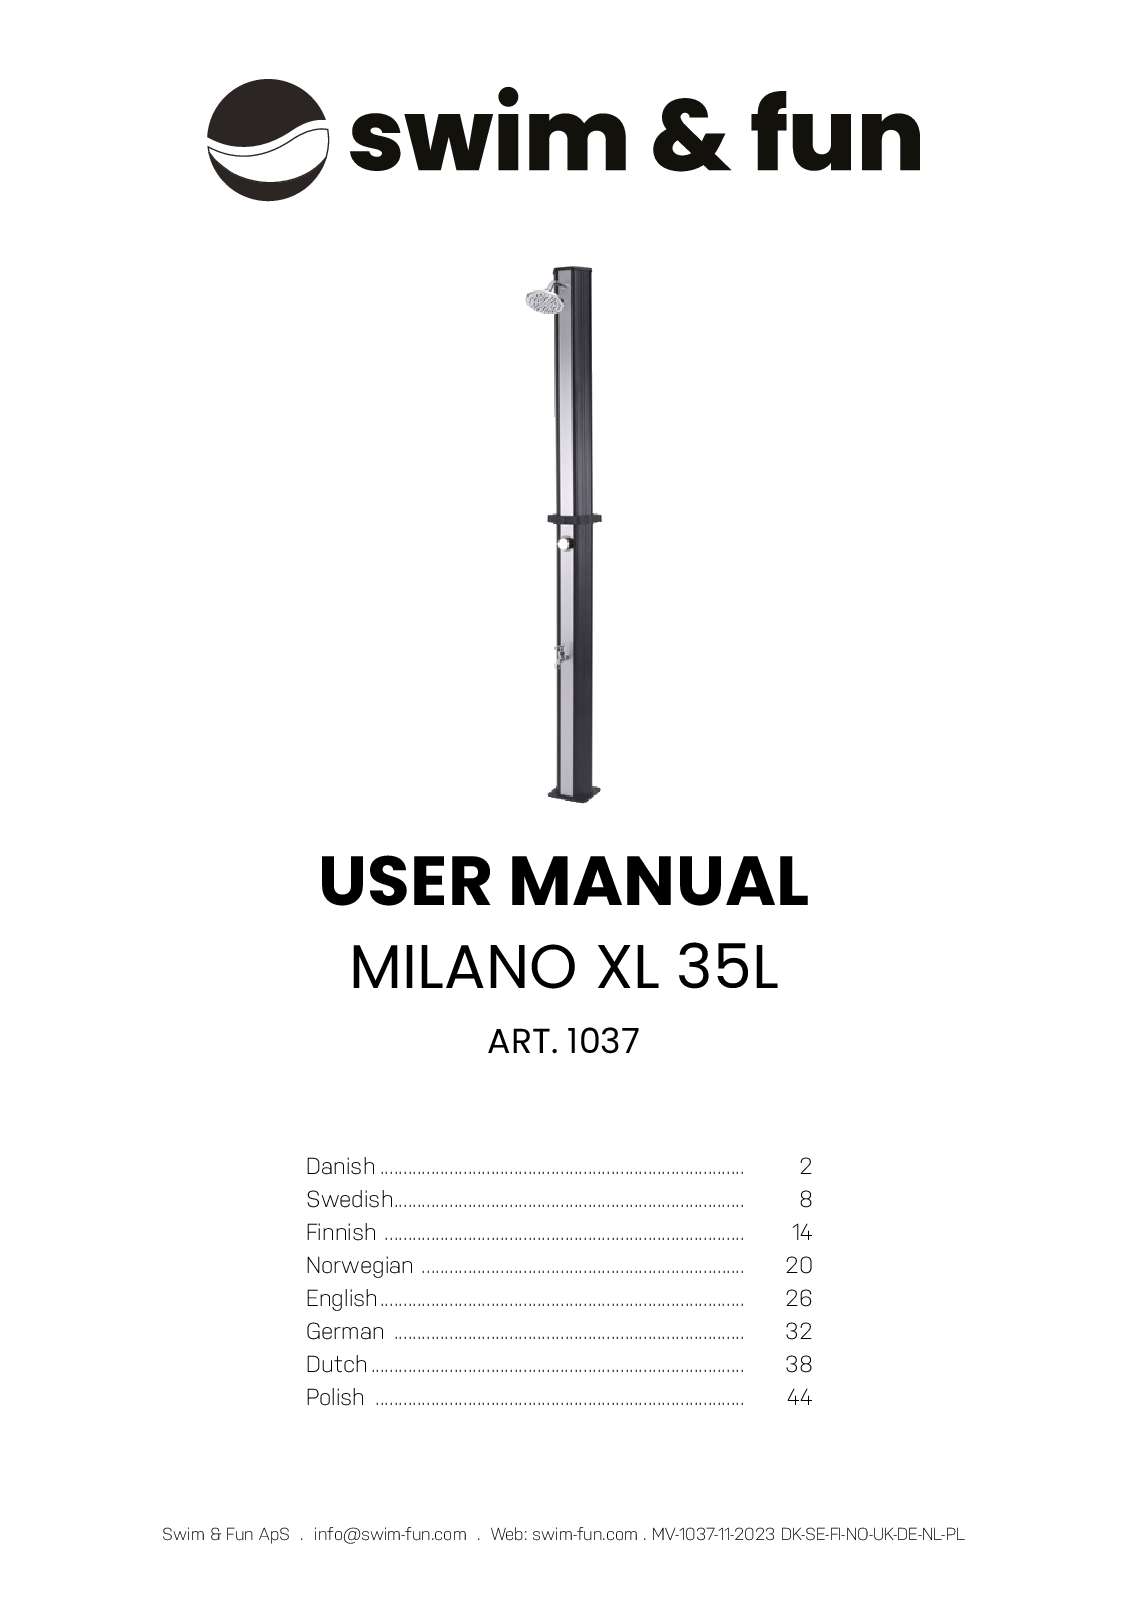 MilanoXL 35L - 1037